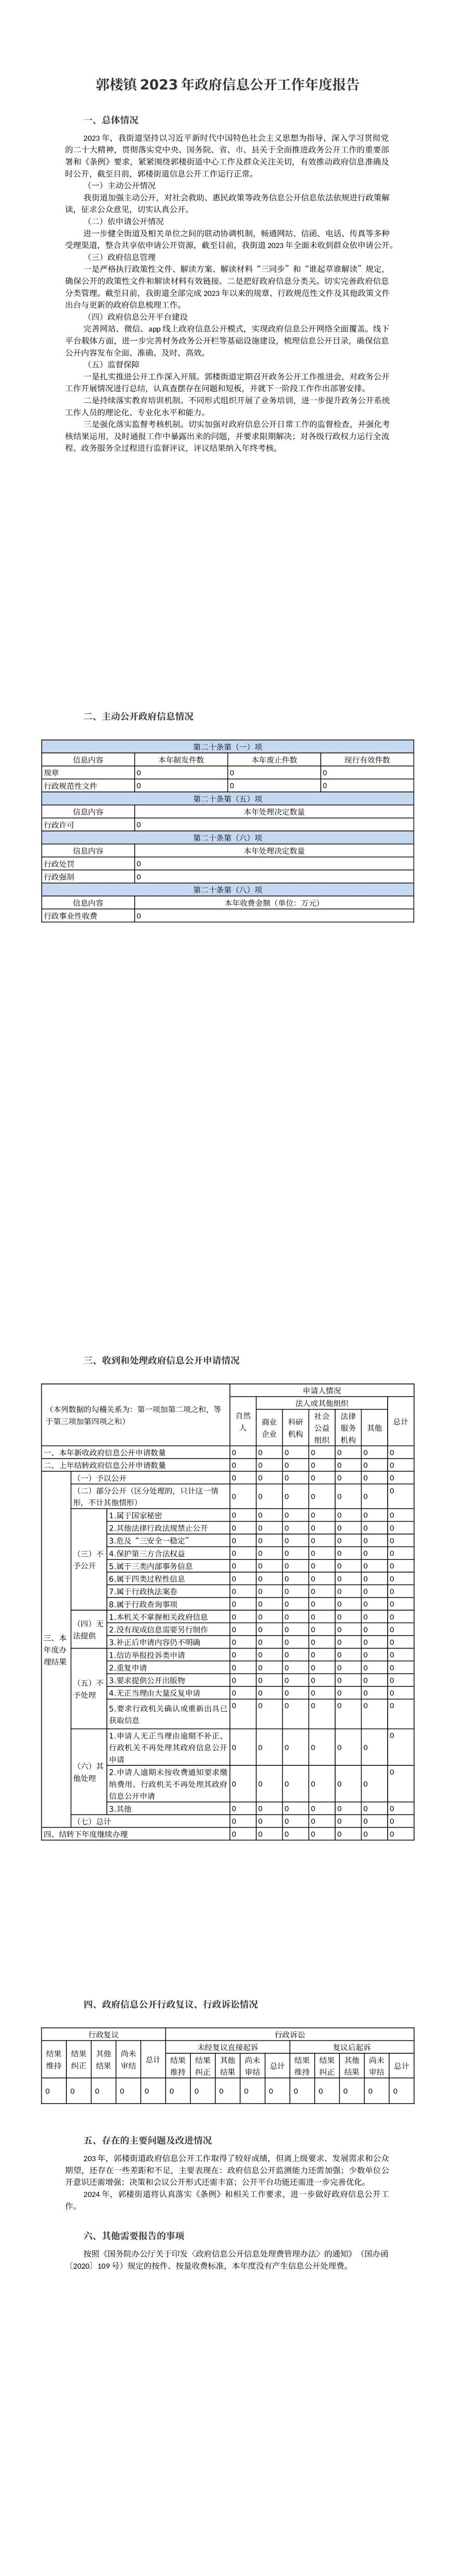 郭楼镇2023年政府信息公开工作年度报告_00.jpg